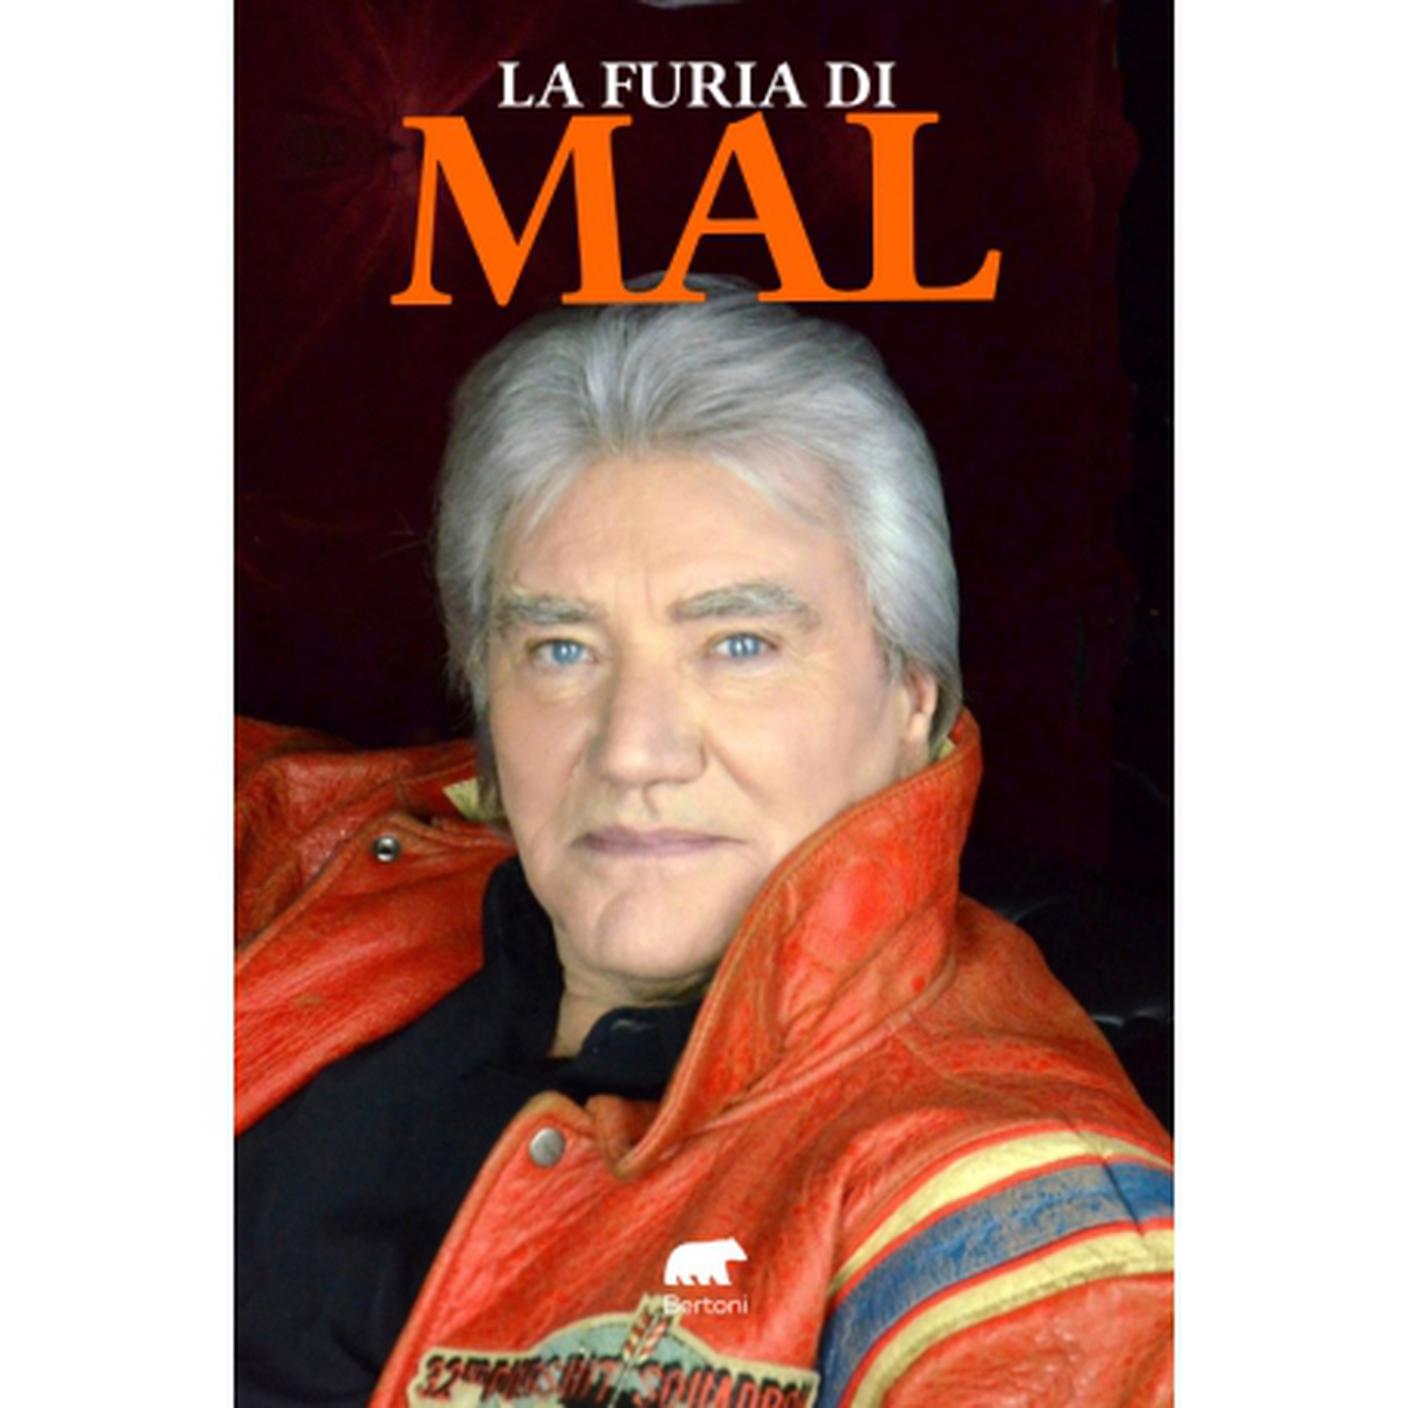 "La Furia di Mal" di Mal, Bertoni Editore (dettaglio di copertina)